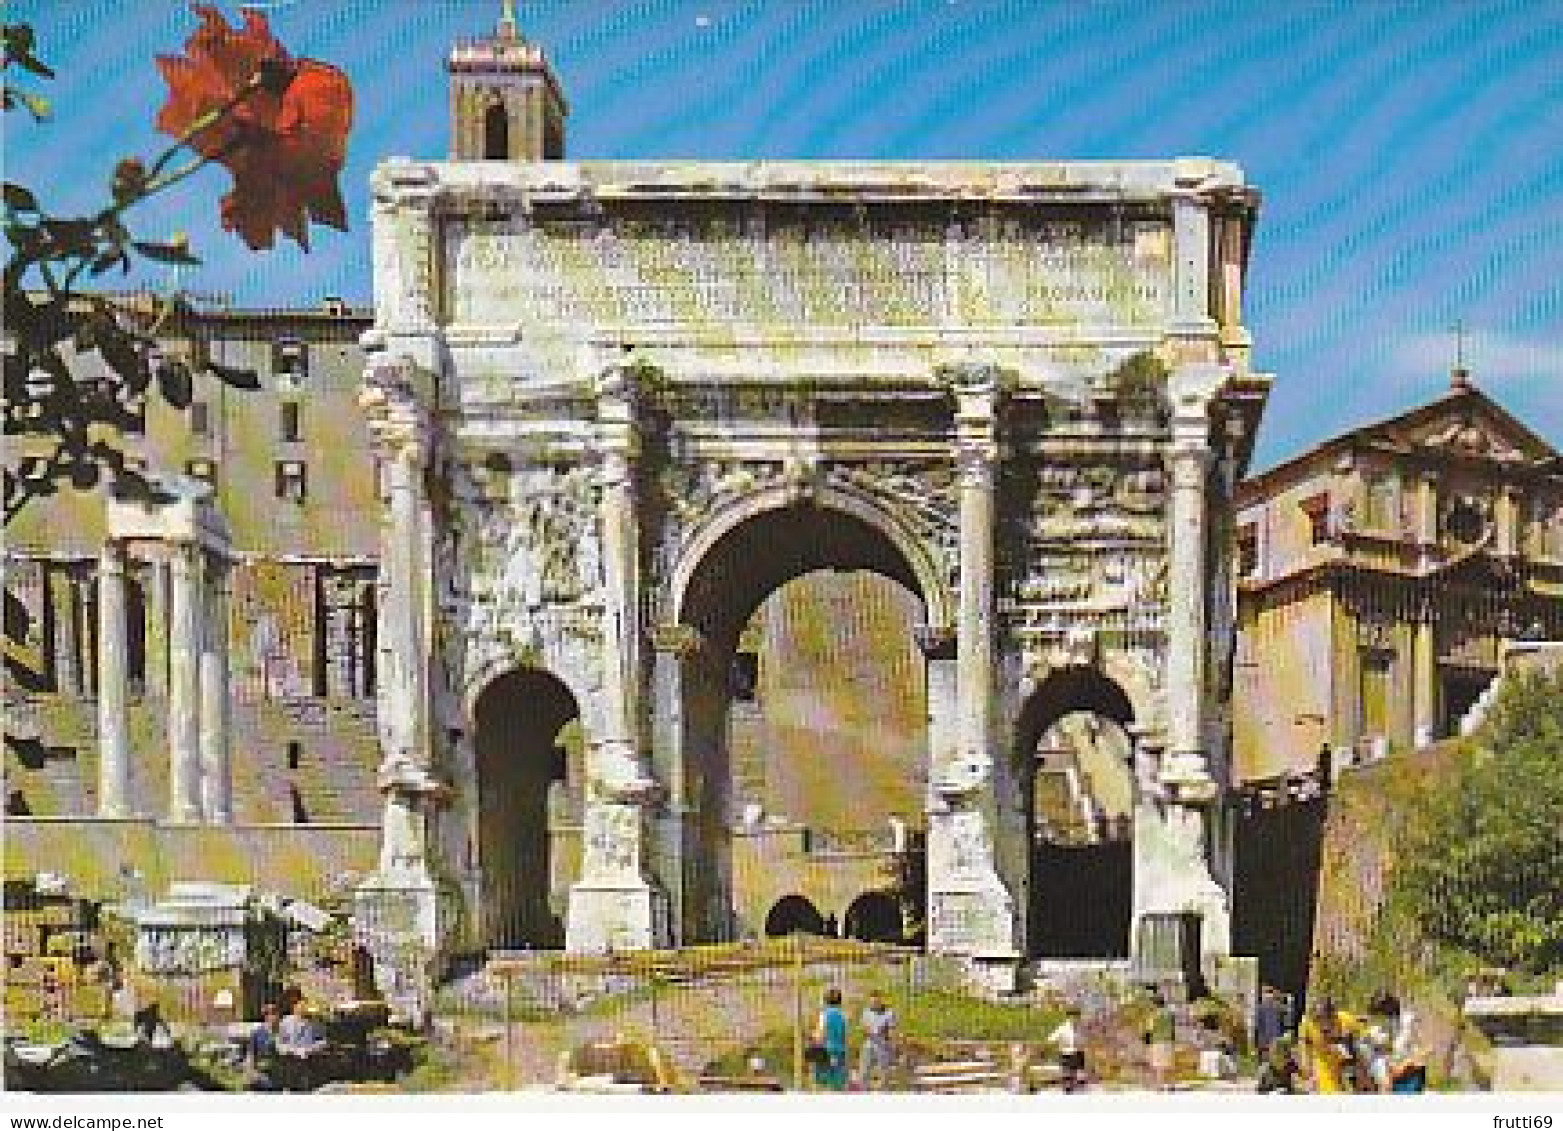 AK 216851 ITALY - Roma - Arco Di Settimio Severo - Andere Monumente & Gebäude